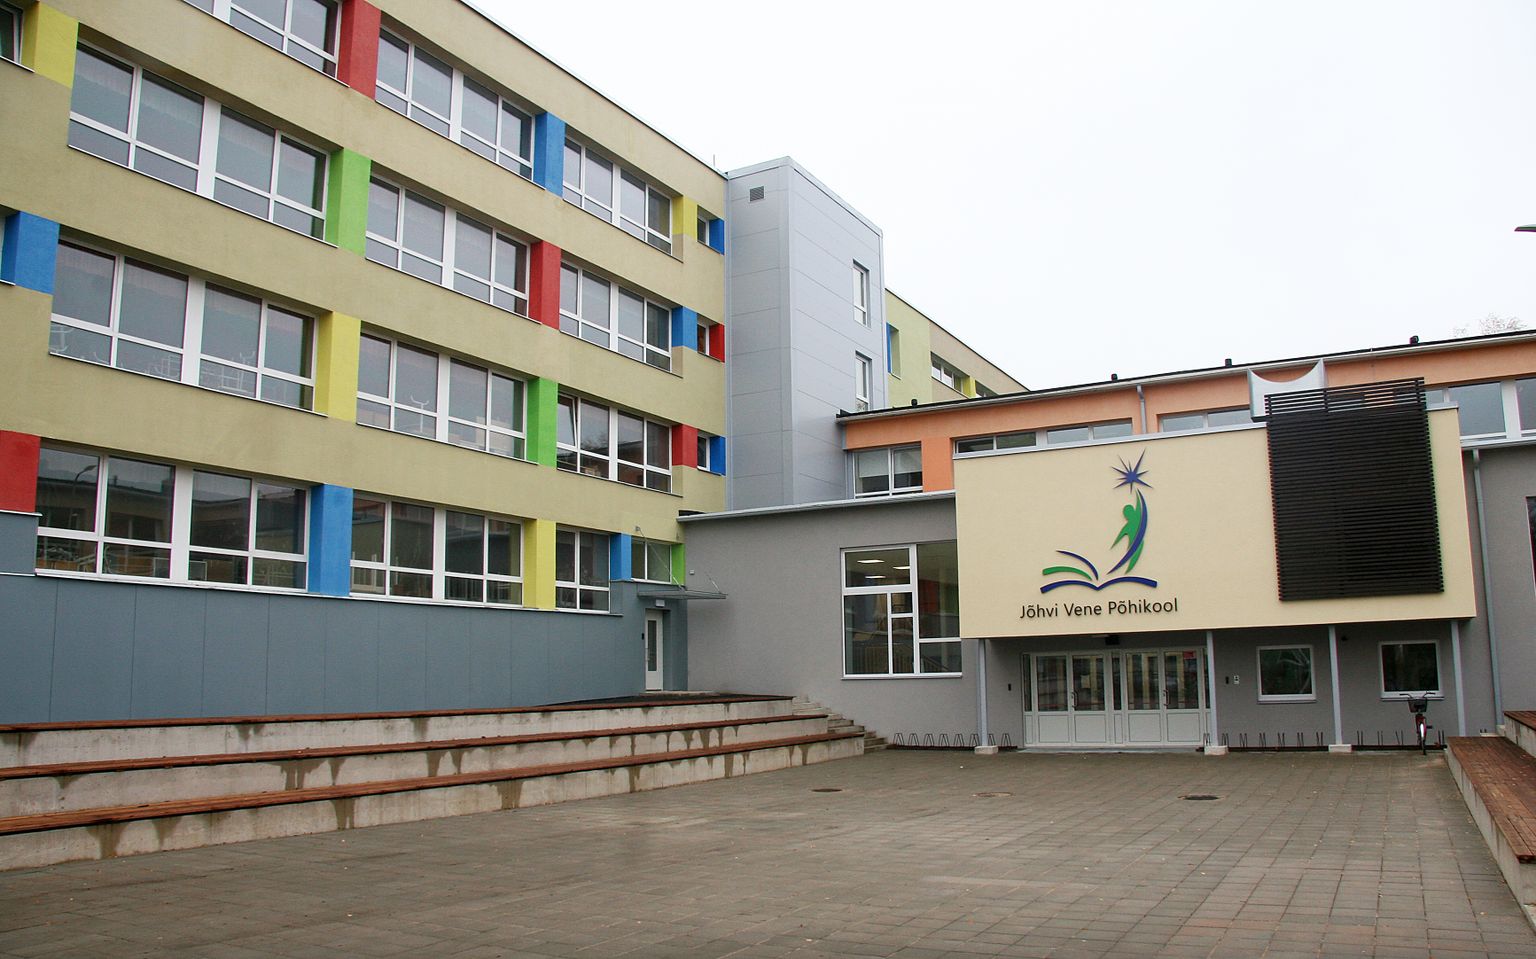 Пять лет назад в Йыхвиской русской основной школе проводилась основательная реновация. Поскольку в то время государство финансировало лишь часть работ по реновации здания, на оставшейся площади было решено создать школу по интересам.